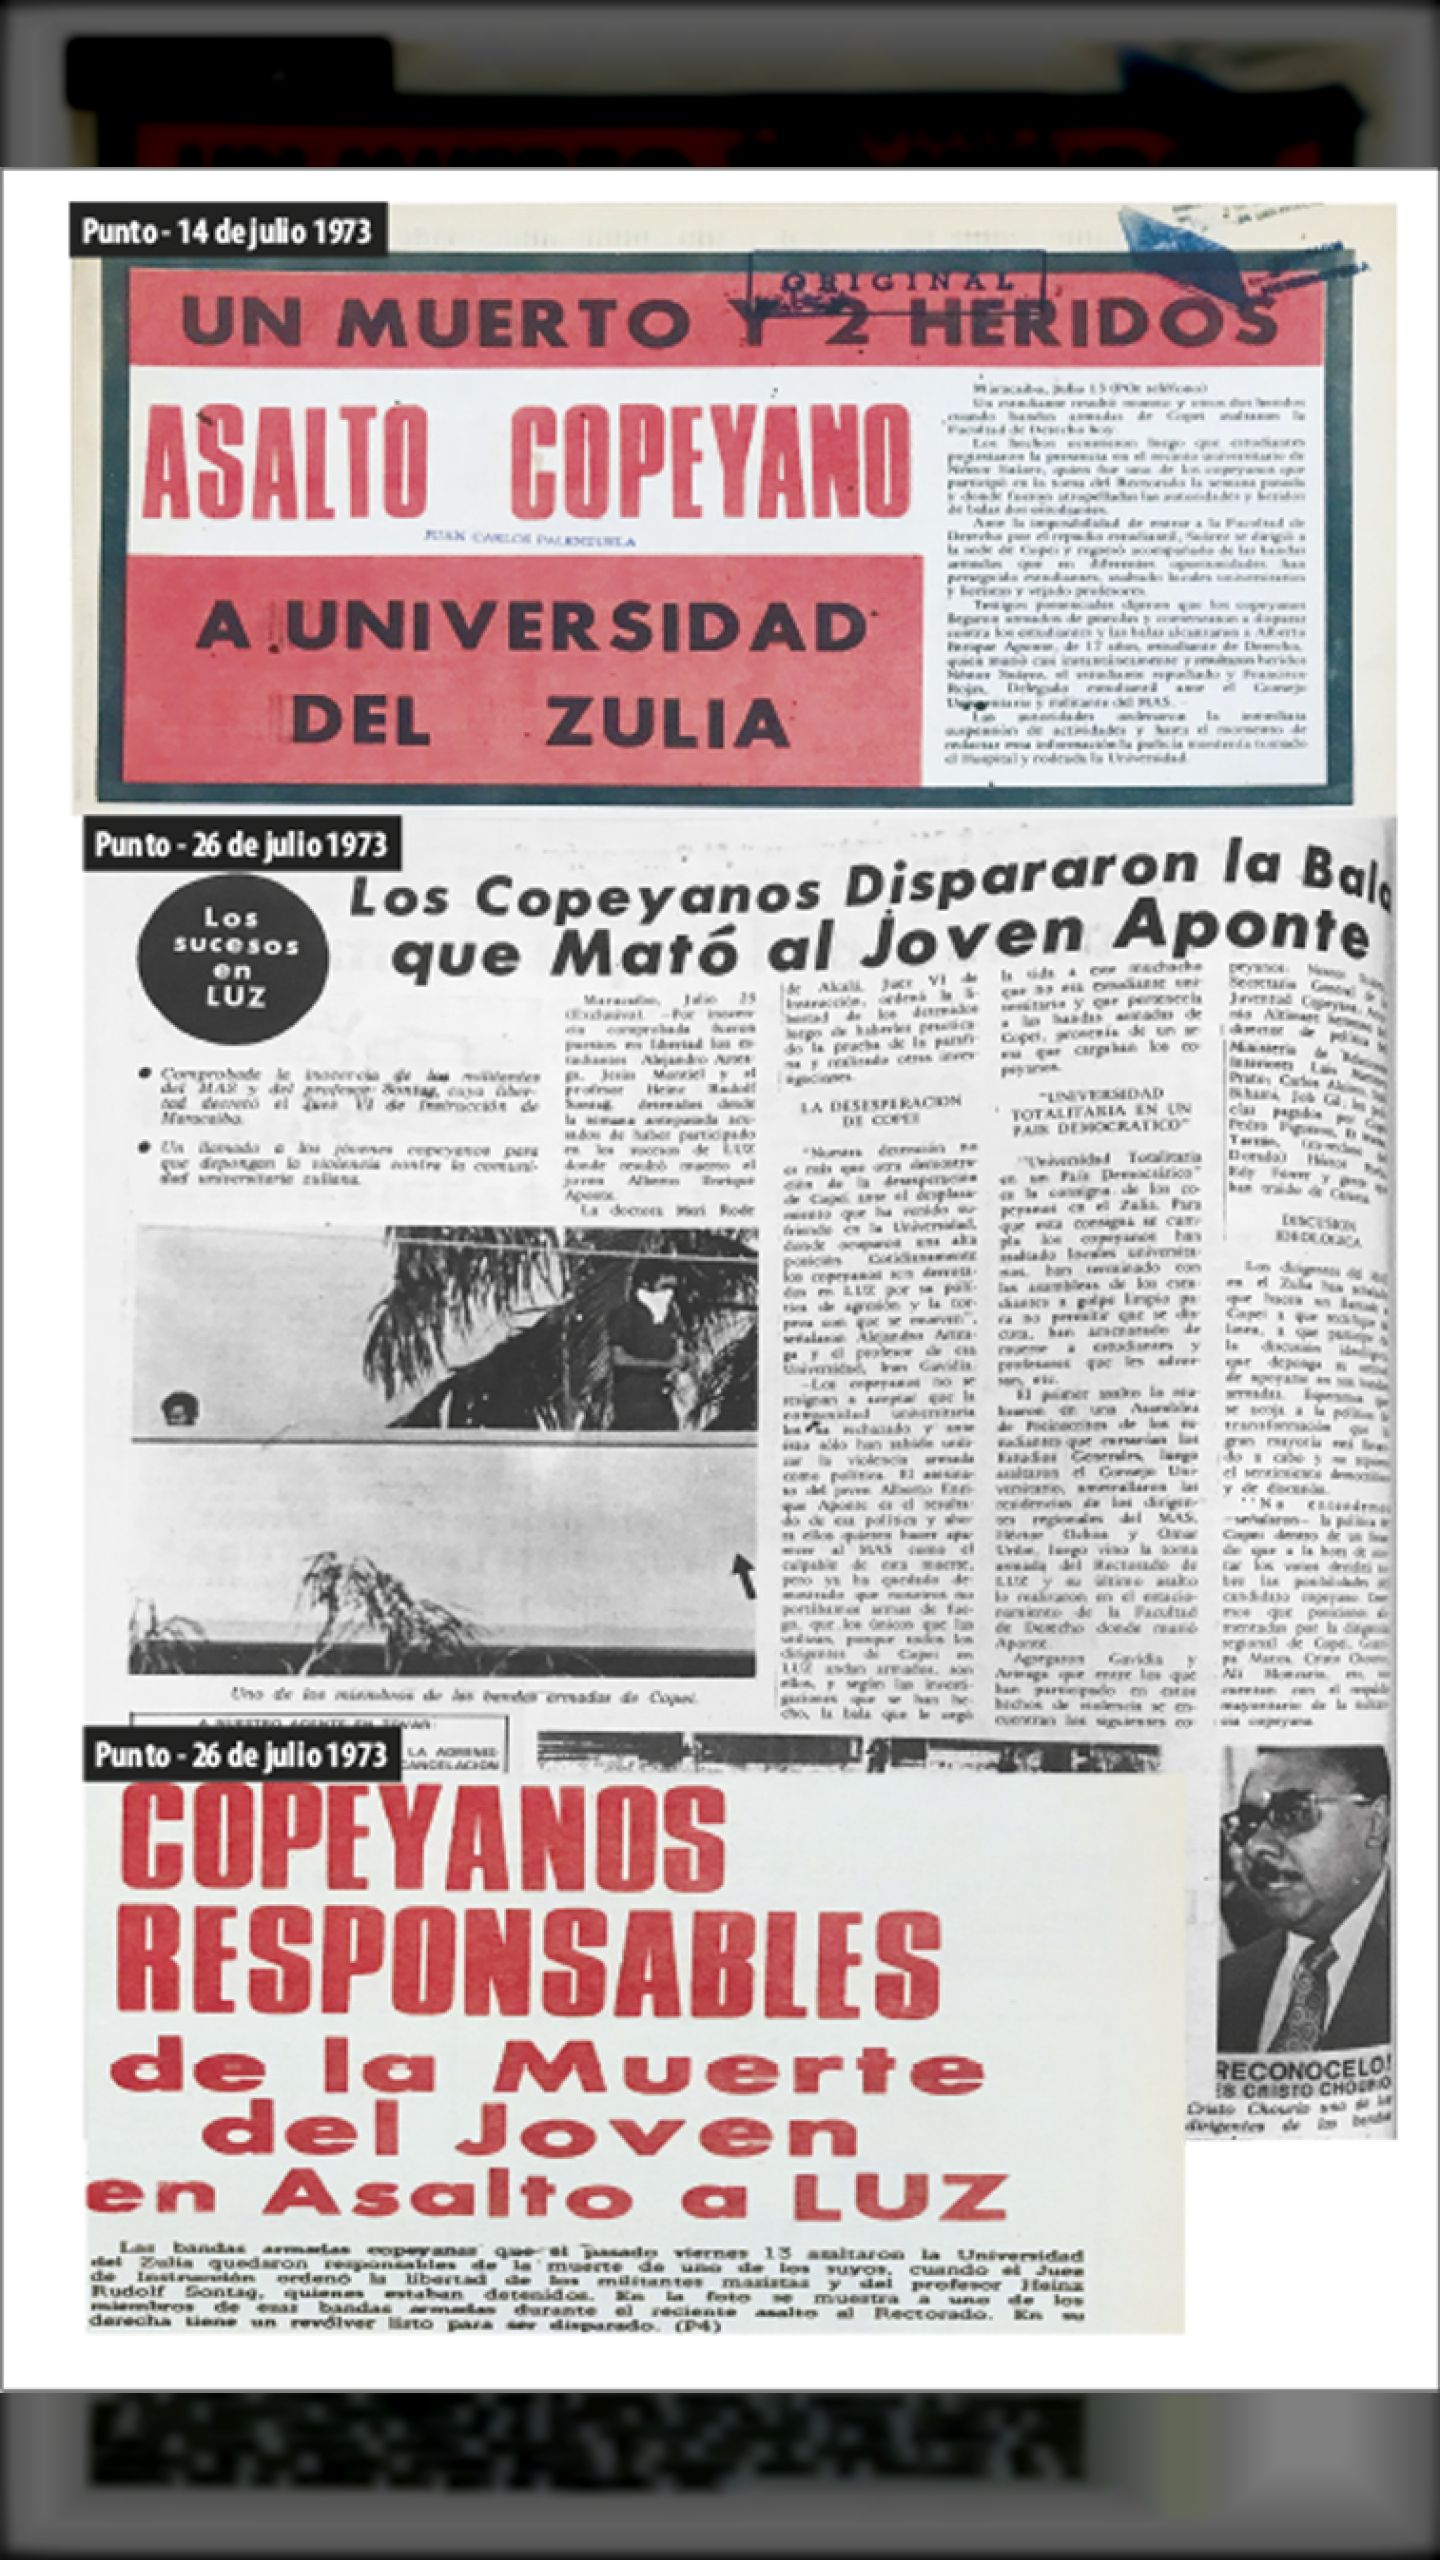 UN MUERTO Y 2 HERIDOS EN ASALTO COPEYANO A LA UNIVERSIDAD DEL ZULIA (Punto, 14 de julio 1973)